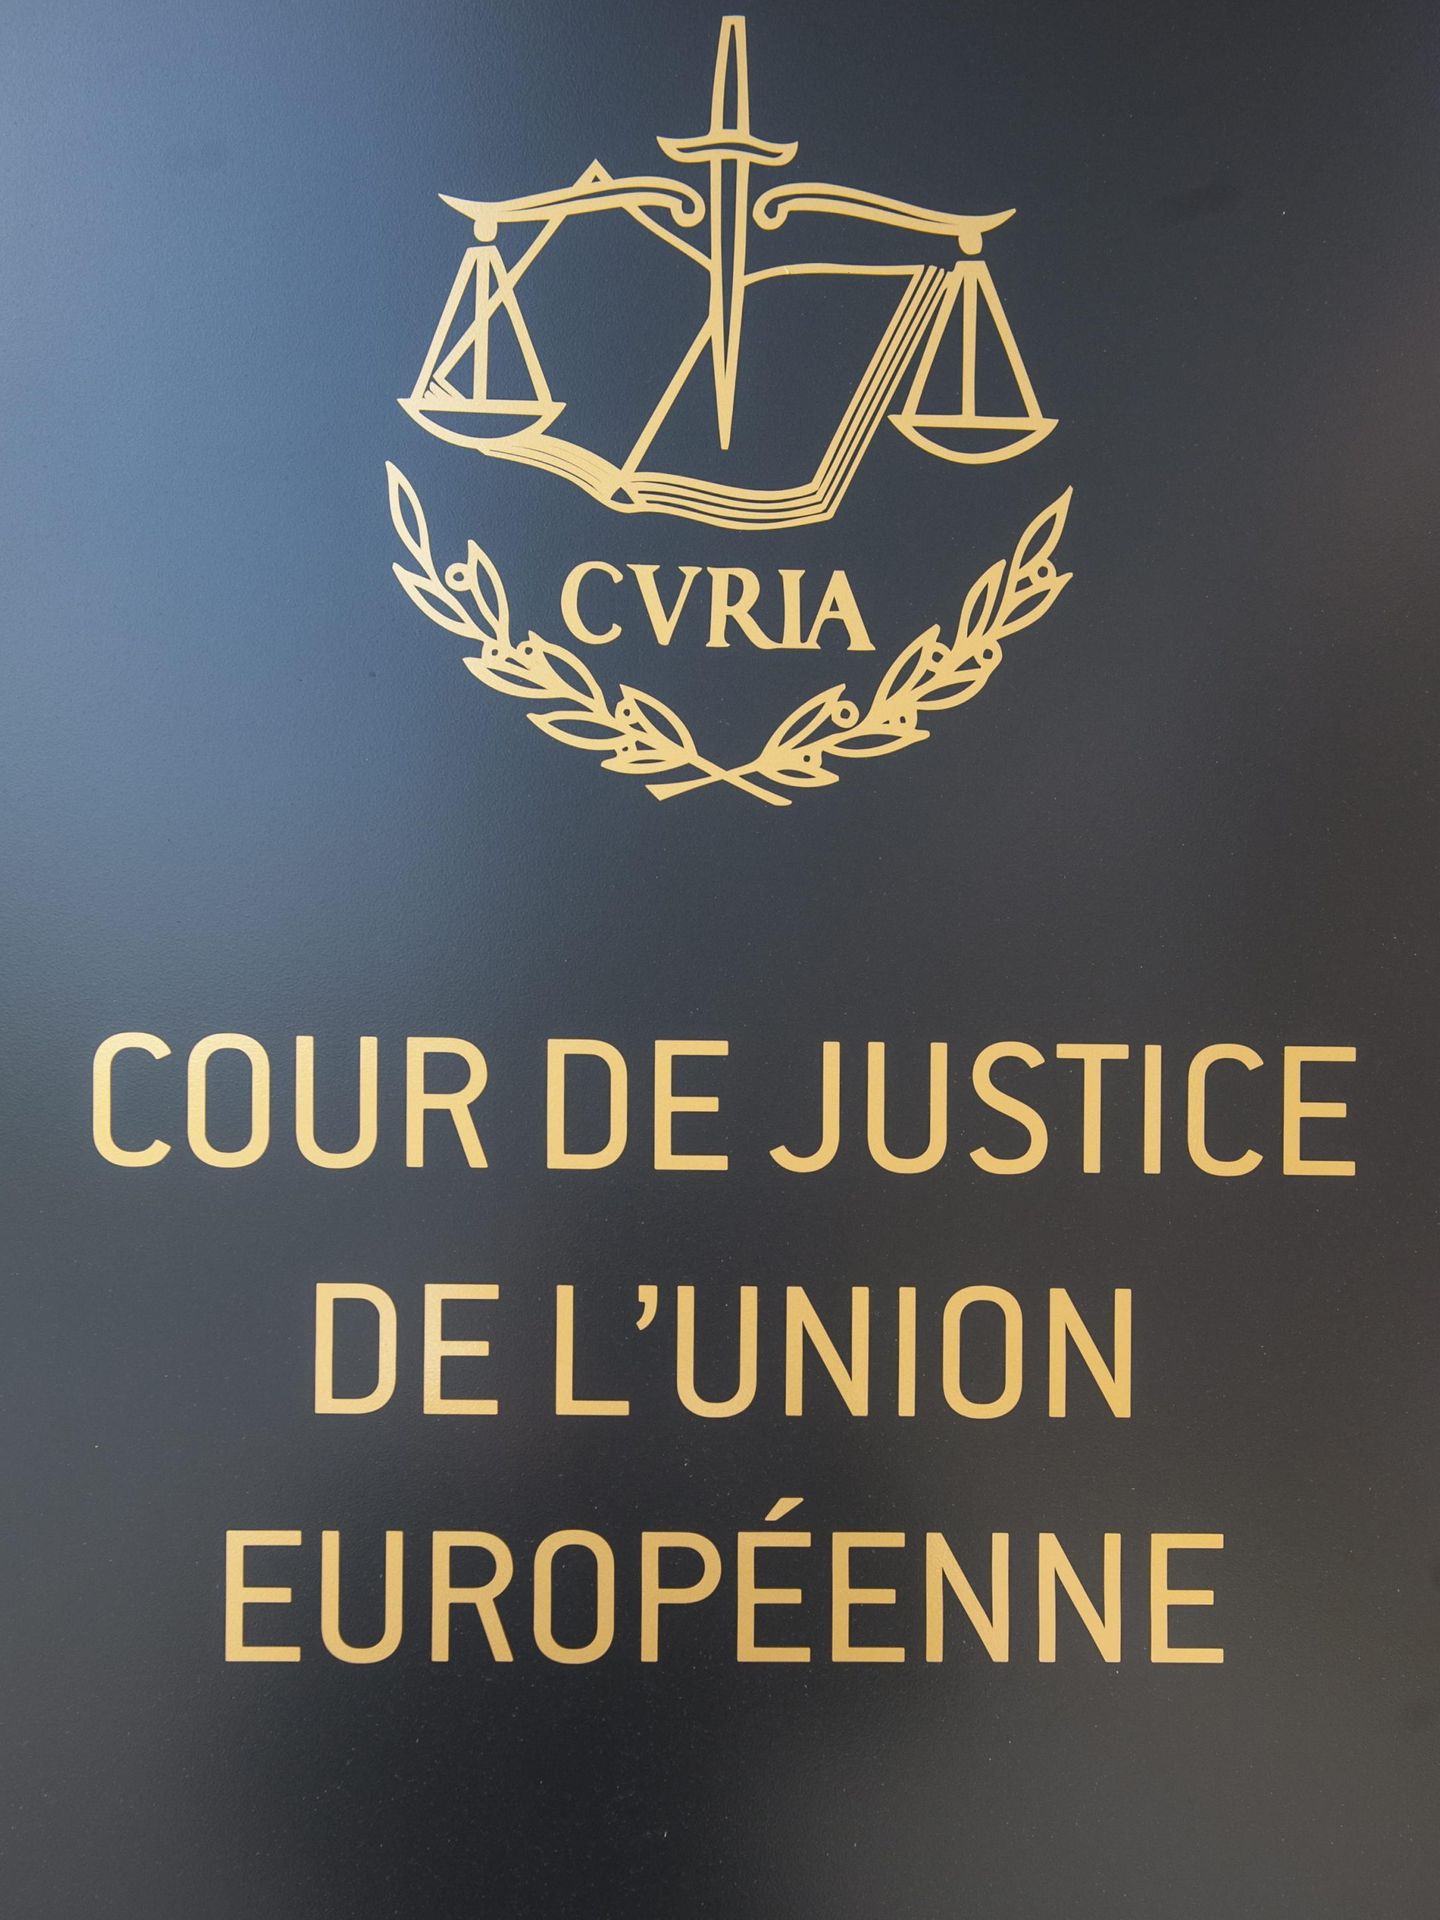 Tribunal de Justicia de la Unión Europea (TJUE) en su sede en Luxemburgo (Efe)